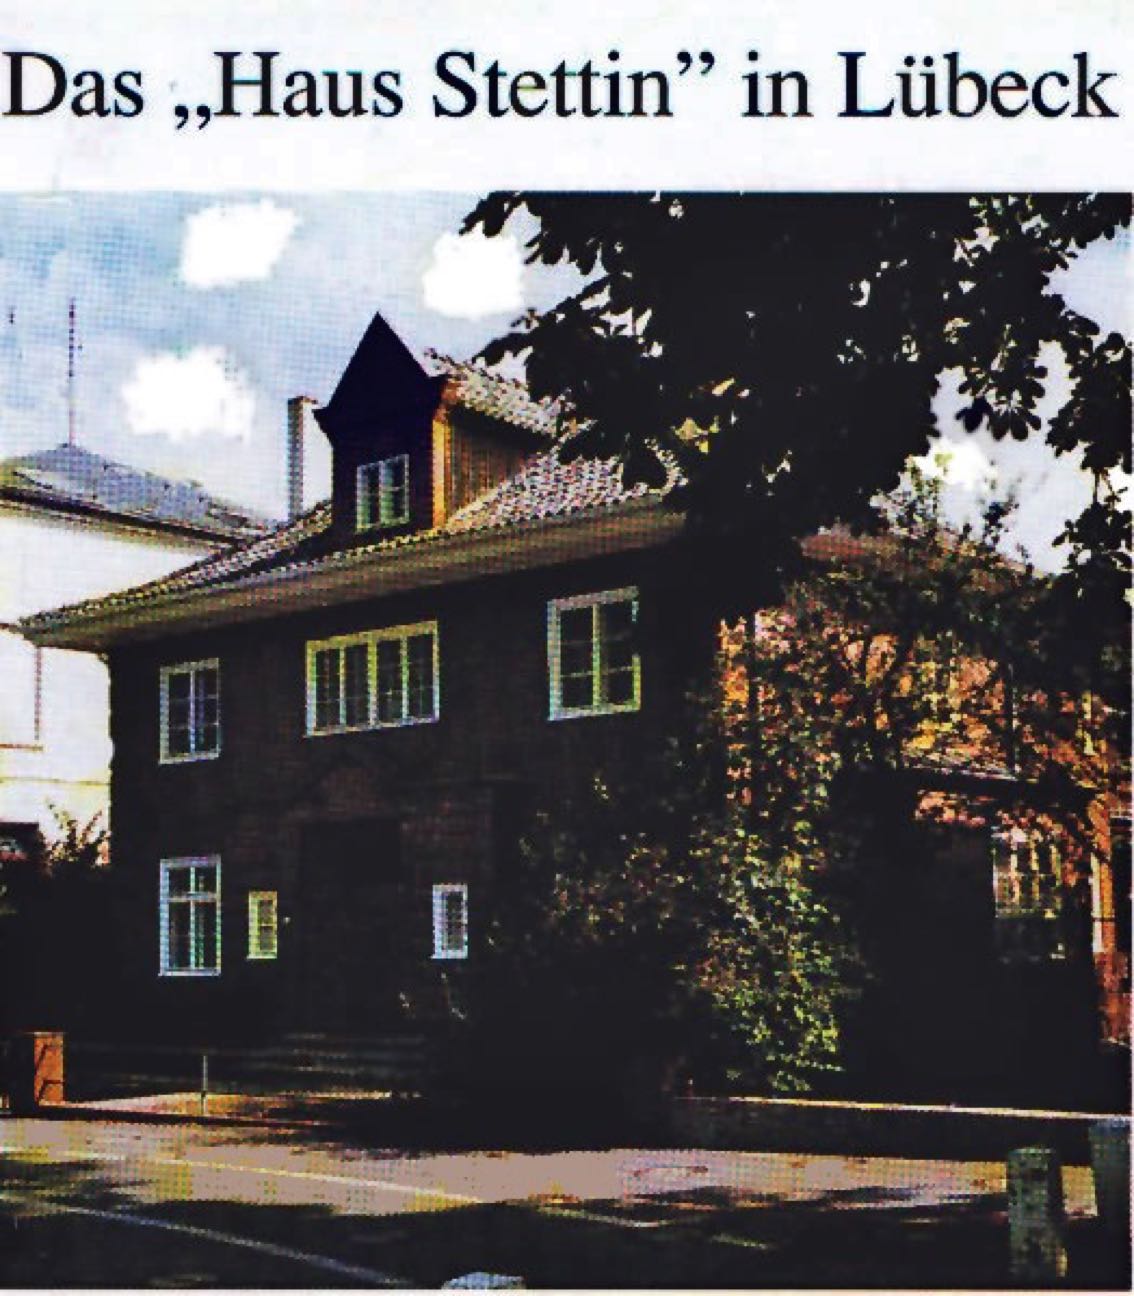 Haus Stettin in Lübeck
